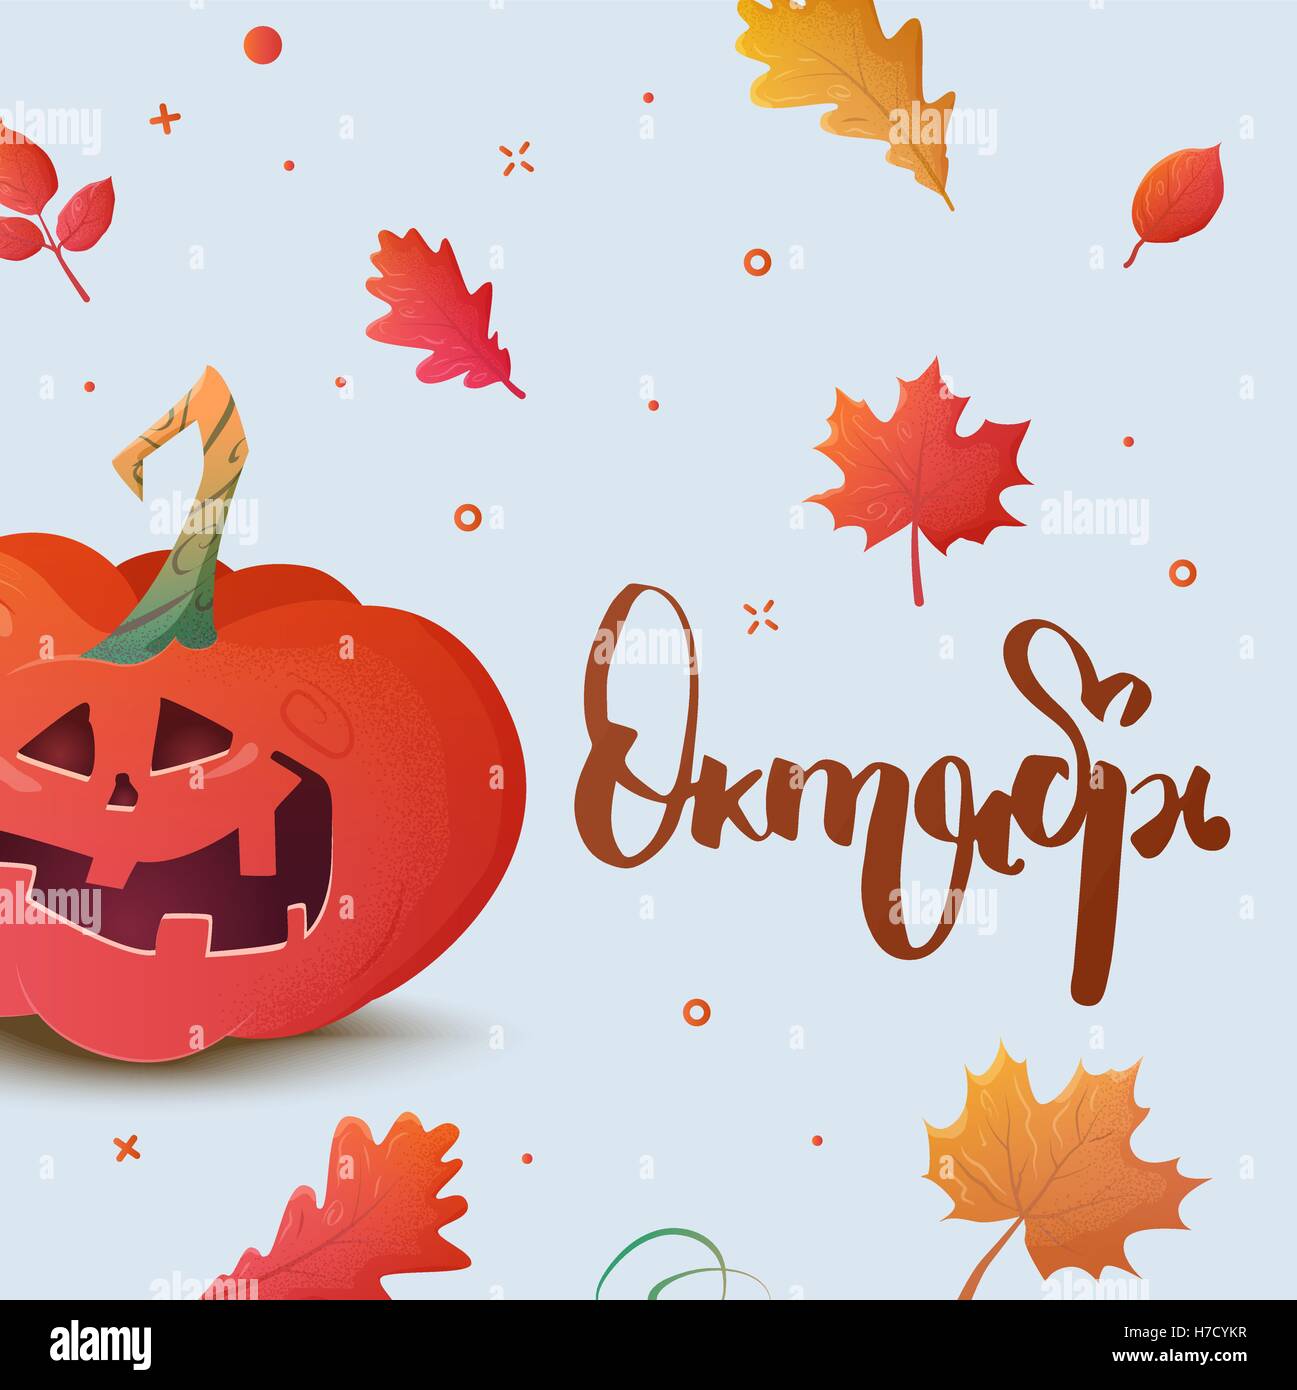 Banner mit Text Oktober in russischer Sprache. Stock Vektor